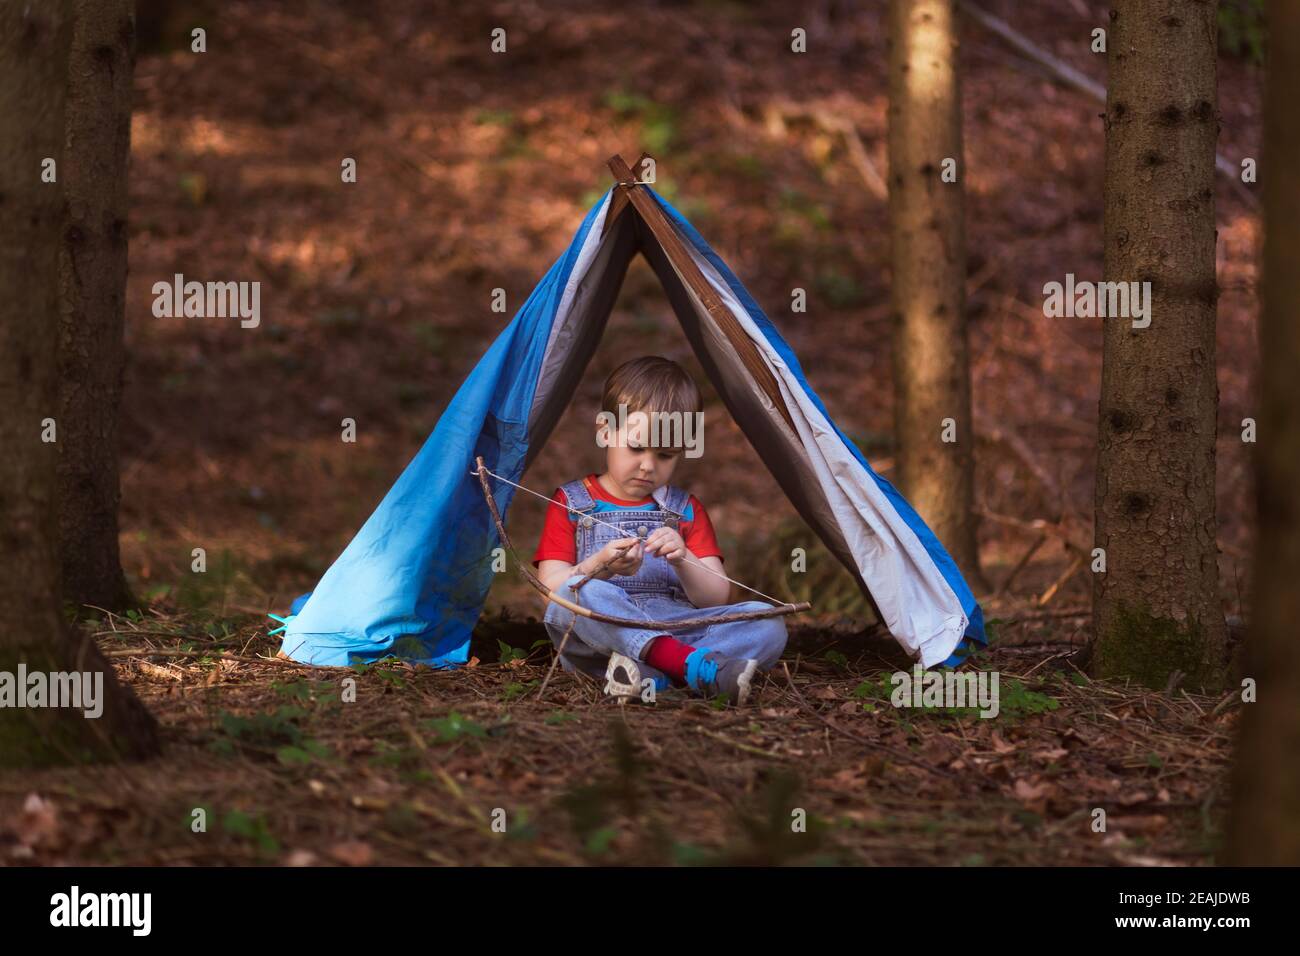 Ragazzo seduto sotto una tenda da gioco nel bosco, giocando da solo, pensieroso e solitario, godendosi, creando un arco, giocare fingendo. Foto Stock